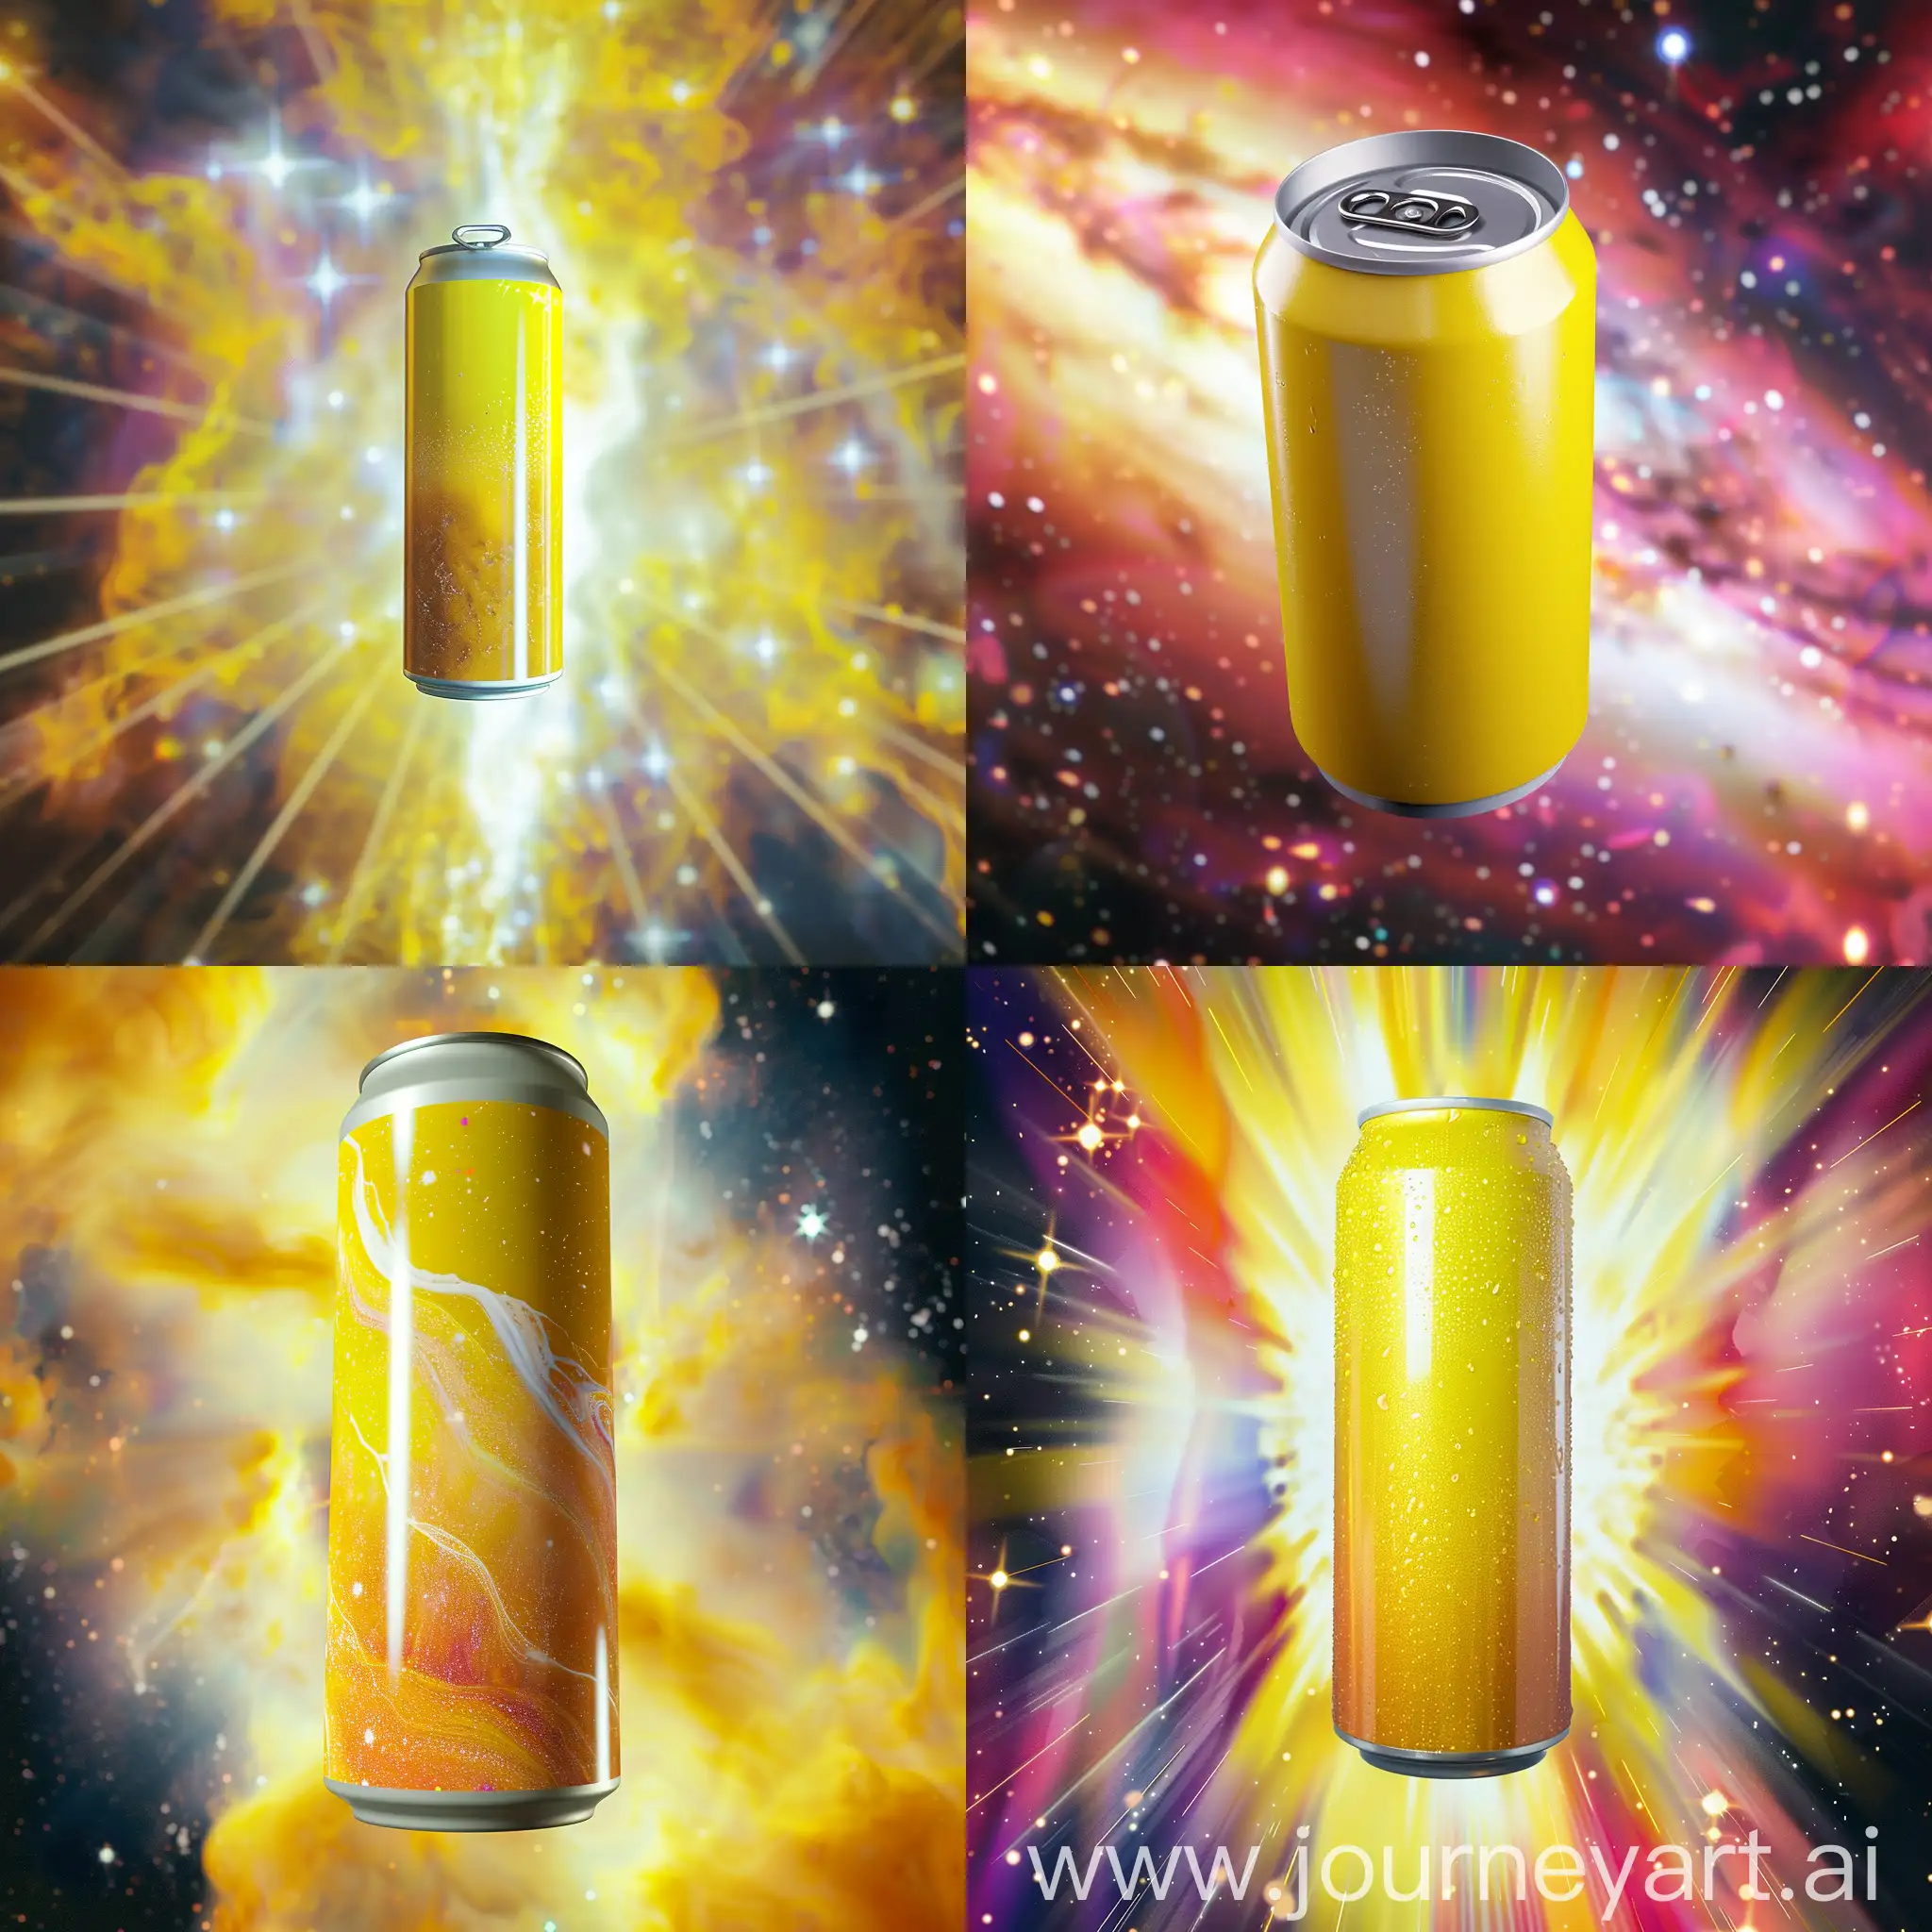 Une canette de boisson énergisante jaune dans un espace lumineux et énergique suspendu dans l'espace